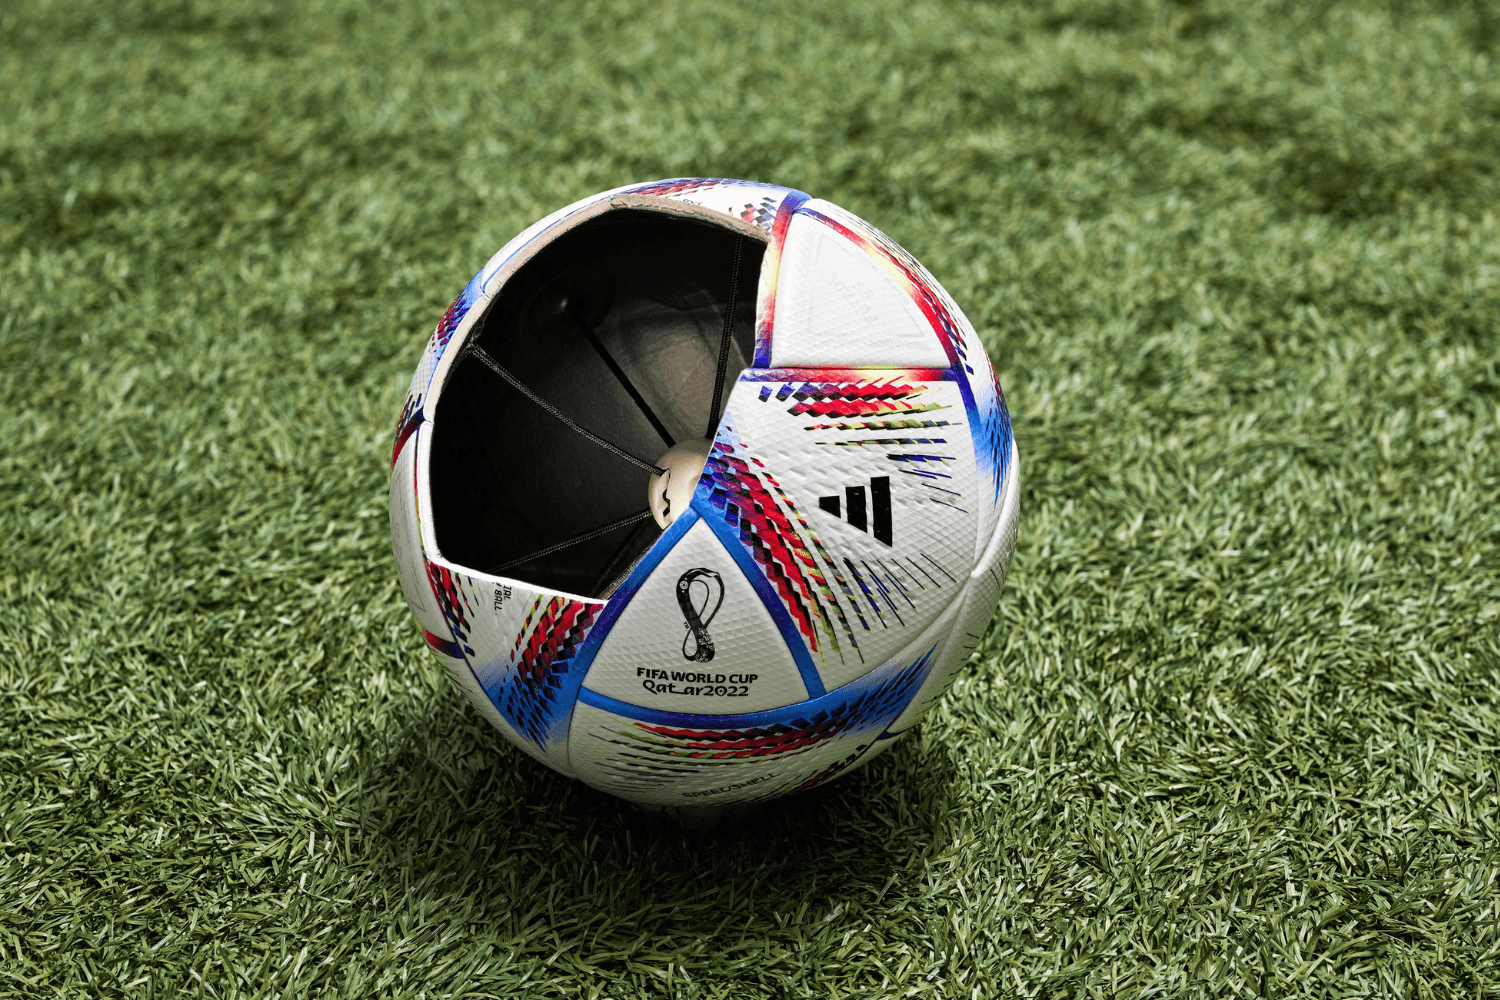 adidas stellt Fußball mit Tracking-Technologie vor